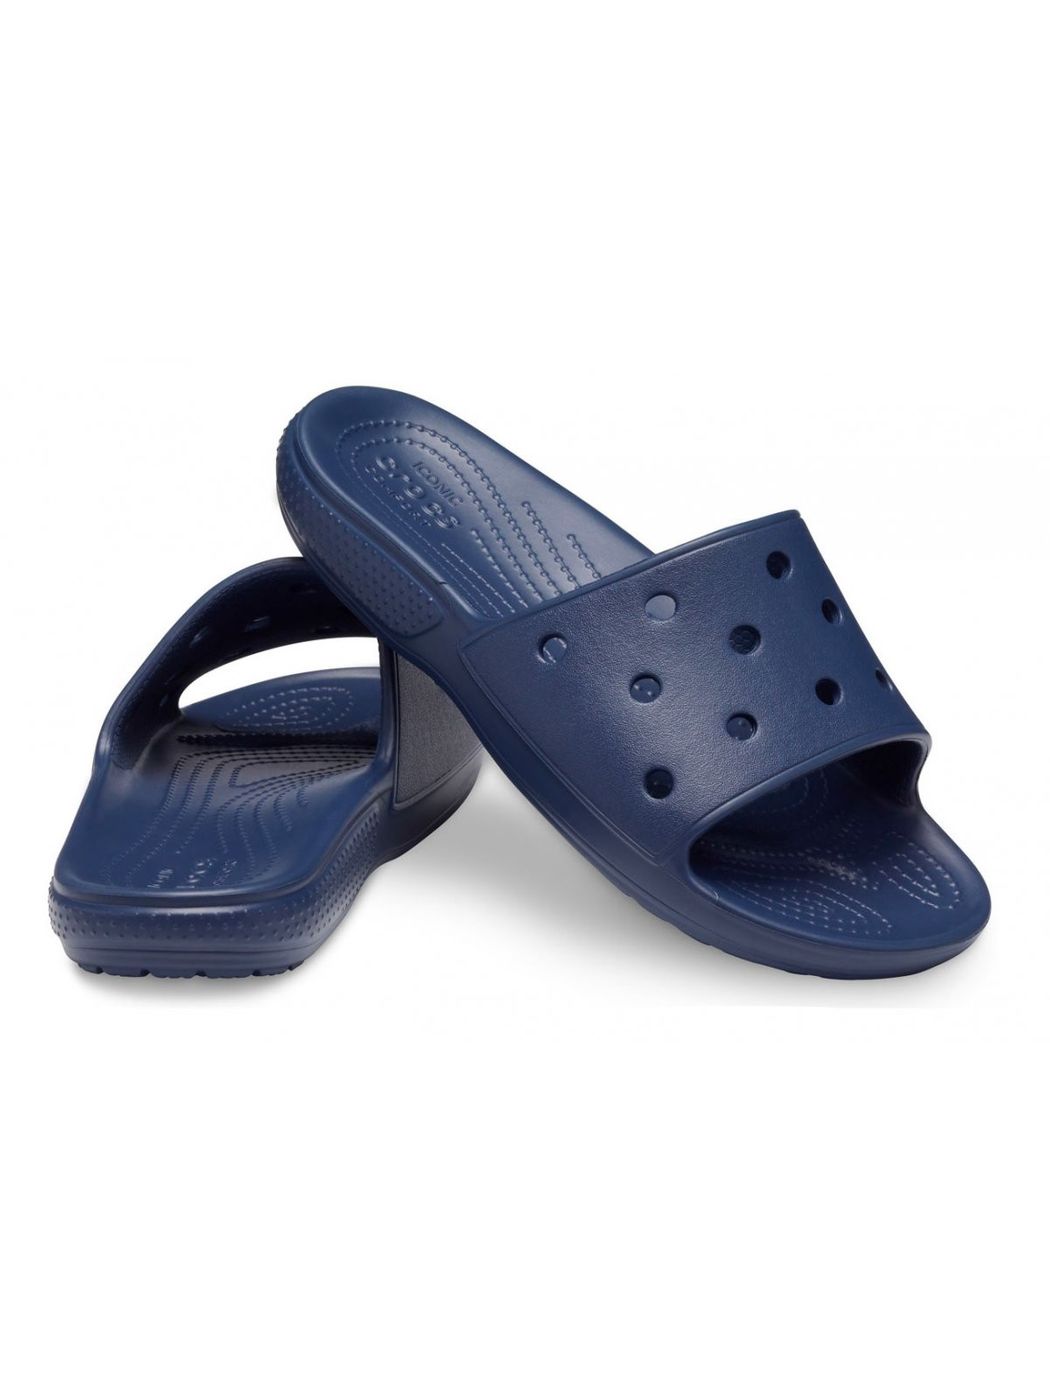 CROCS Chaussons Unisexe Adulte Classic Crocs Slide 206121 410 Bleu